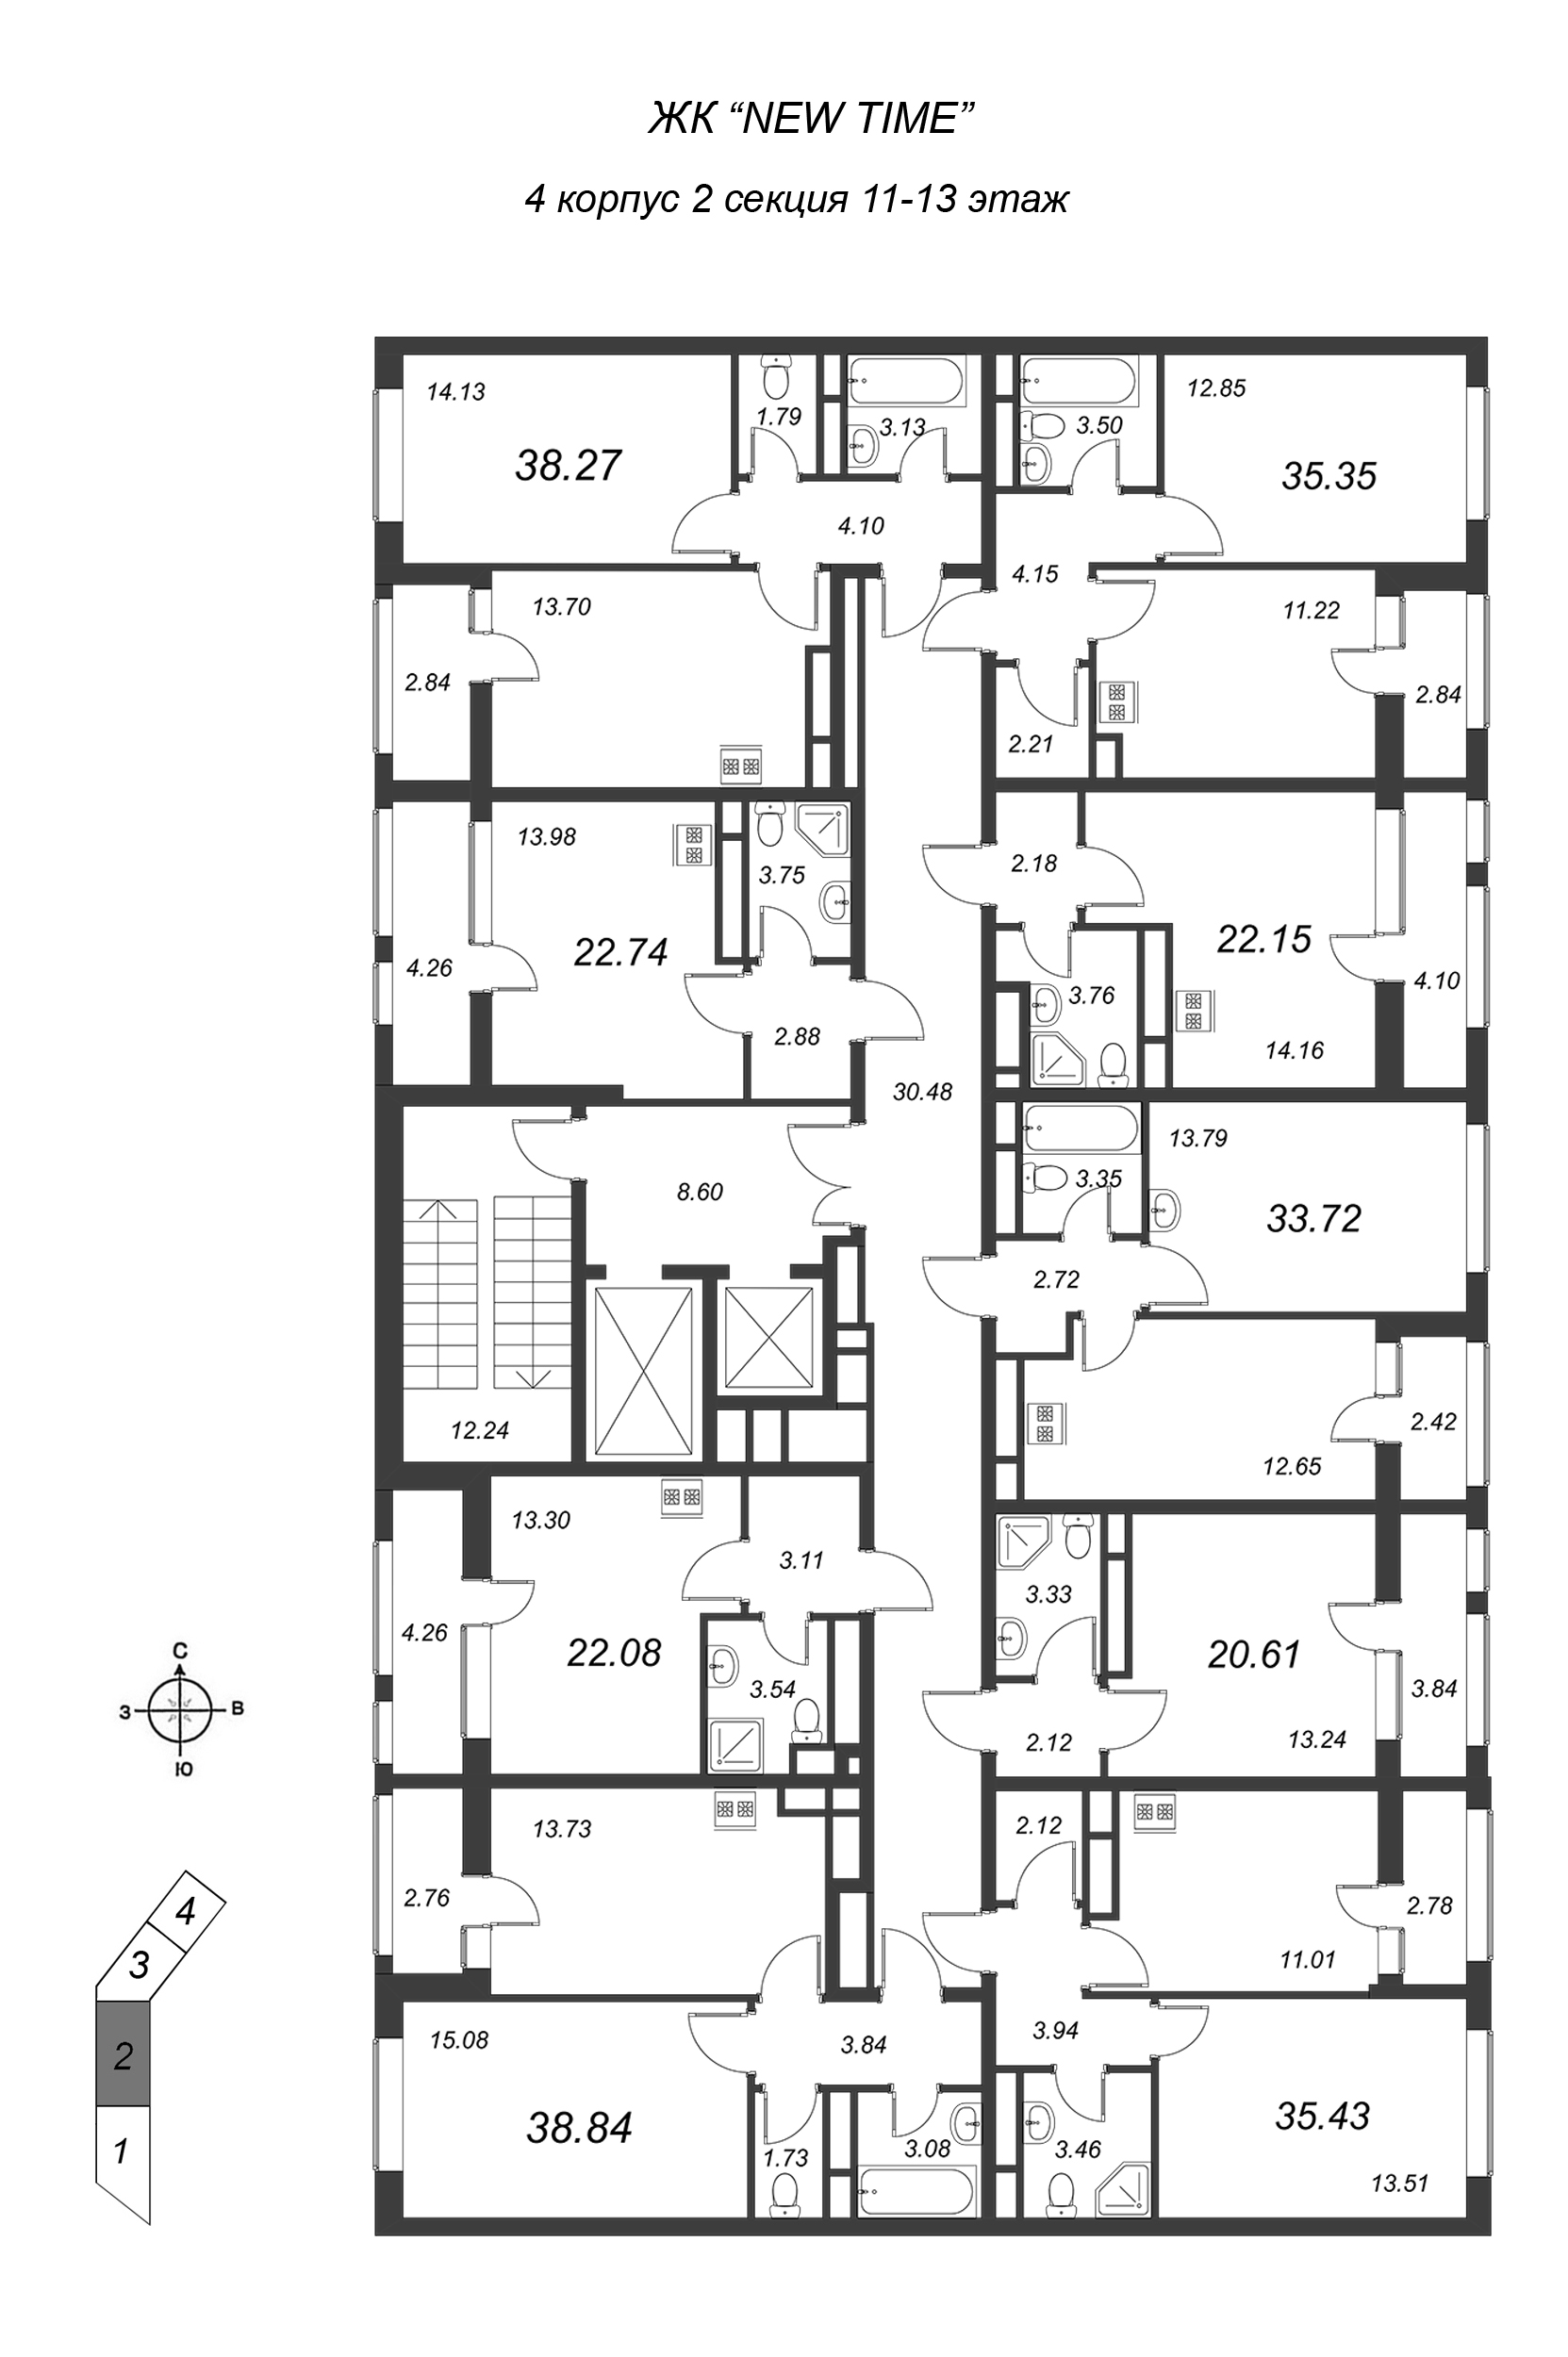 Квартира-студия, 22.1 м² в ЖК "New Time" - планировка этажа